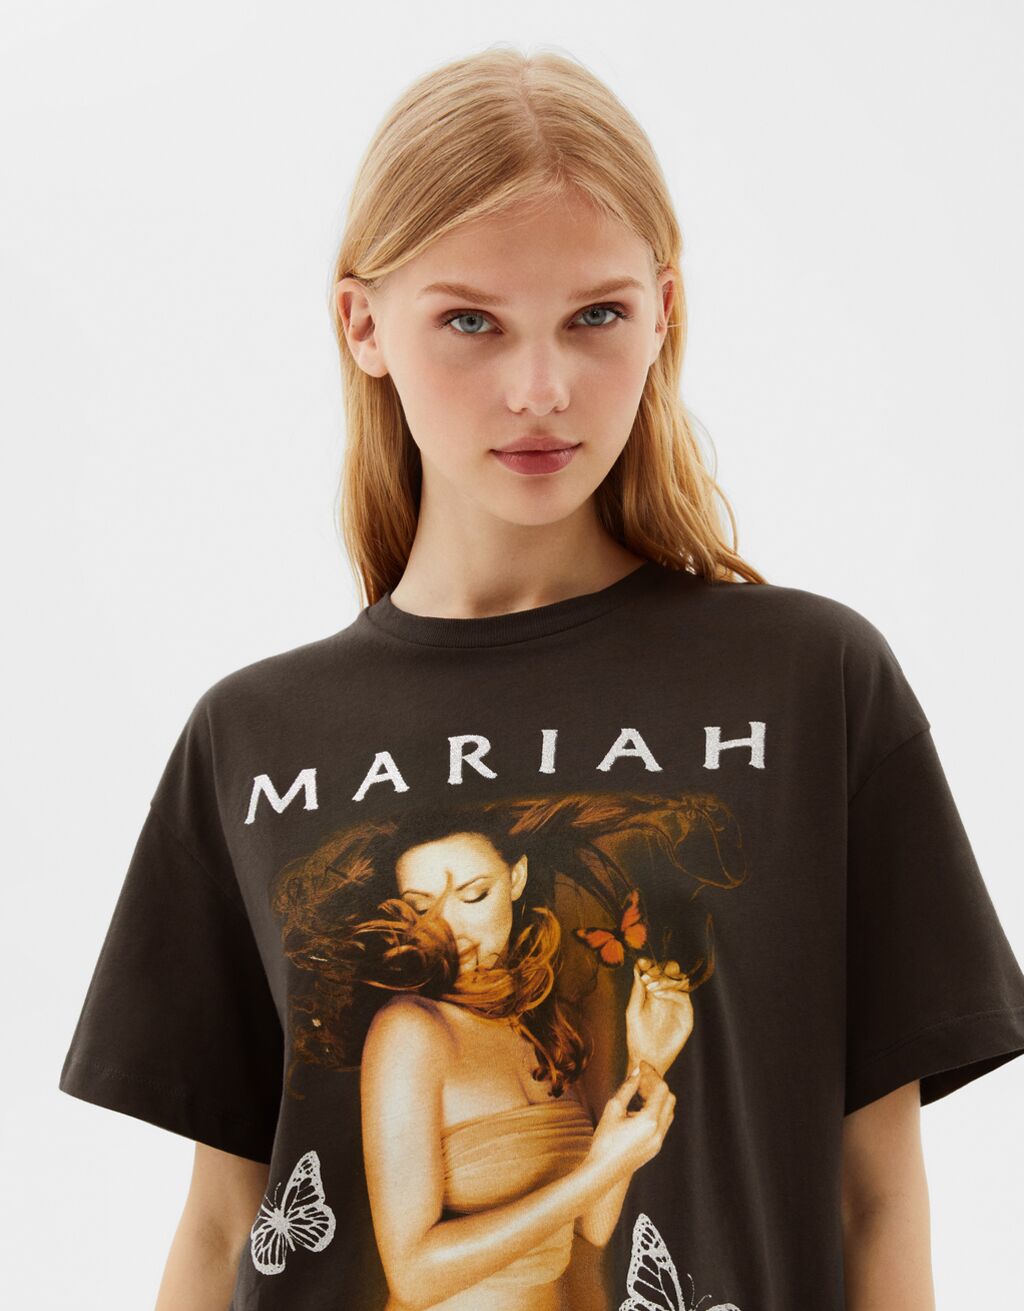 Mariah Carey Short Sleeve T Shirt Woman Bershka